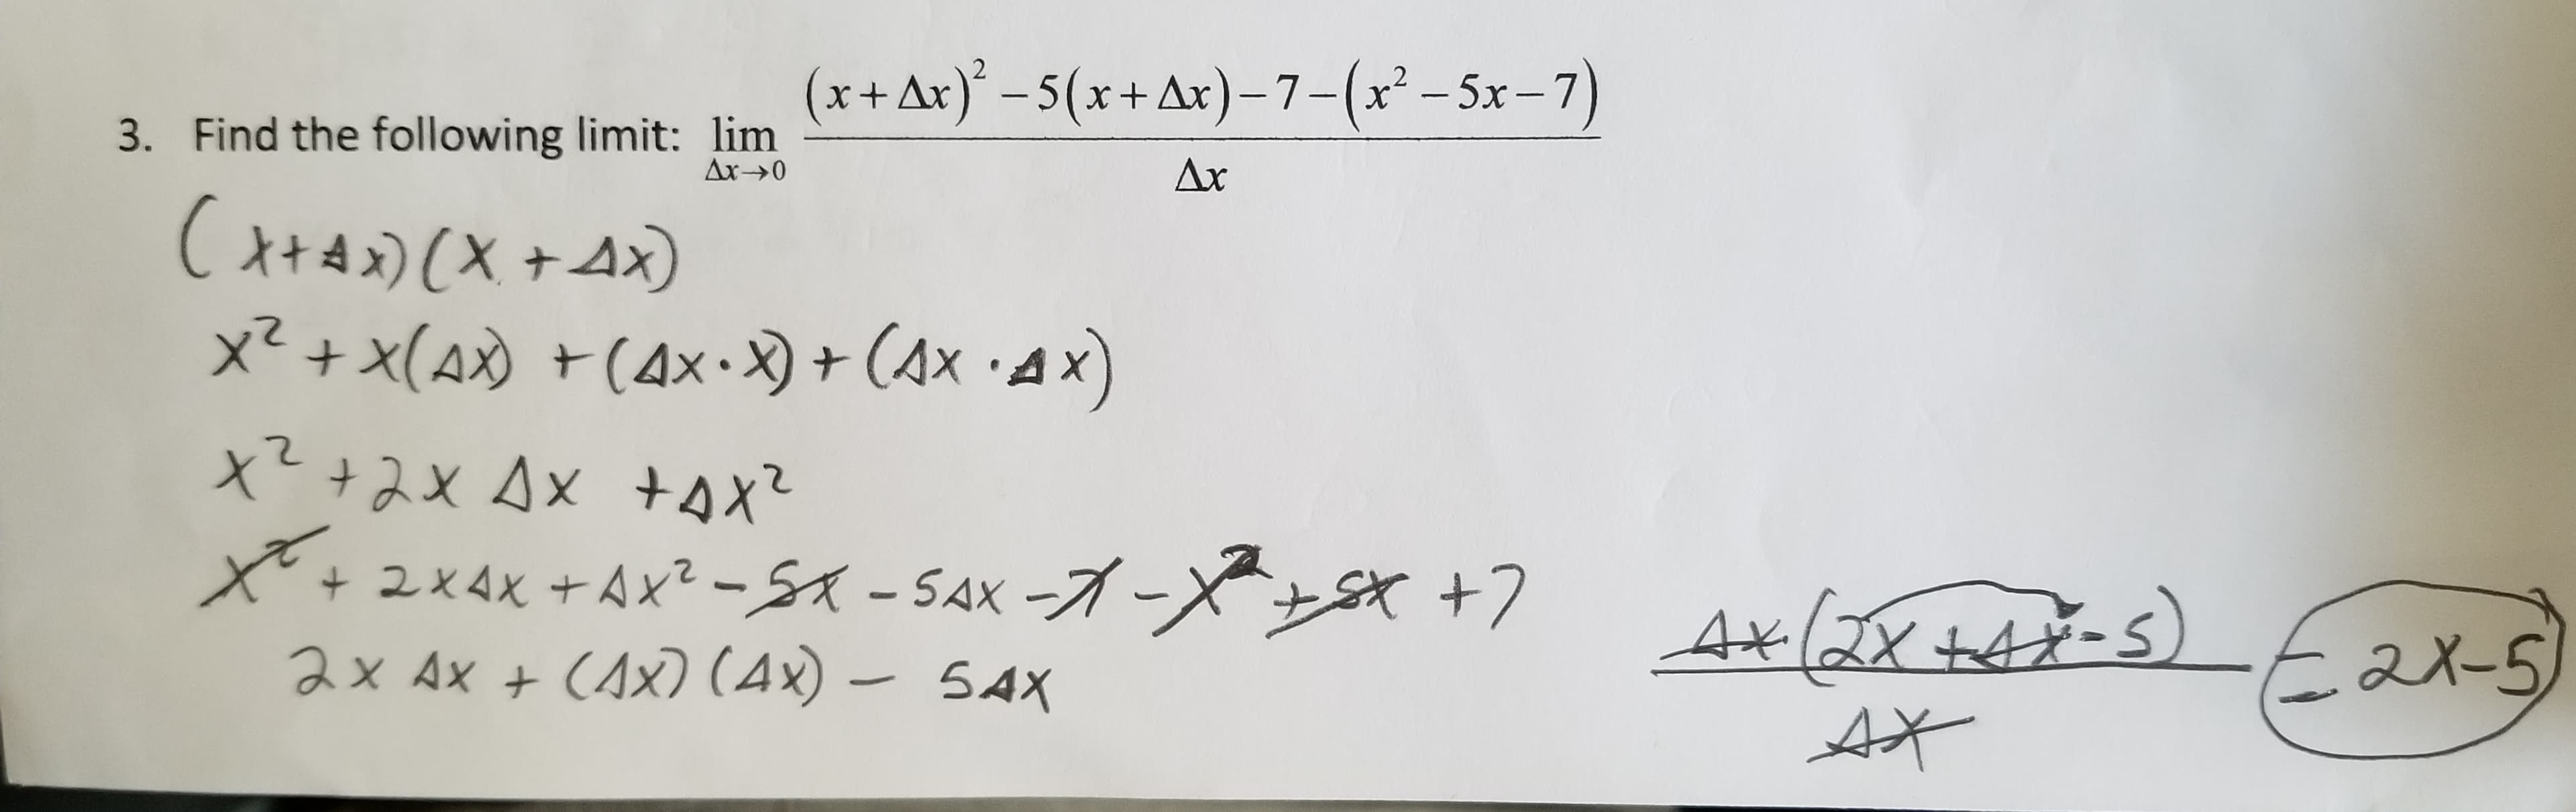 3. Find the following limit: lim + Ax)-5(x+Ar)-7-(x-5x-7)
A(XAx)
Xx(A)(4x-) + (Ax AX)
x22xAx sx
Ax- 0
Ax
+ 2x4x +Ax2-SA-SAX--X
ax Ax + CAx) (4x)- 54x
+7
4xl2x tAX-S) ax-s
